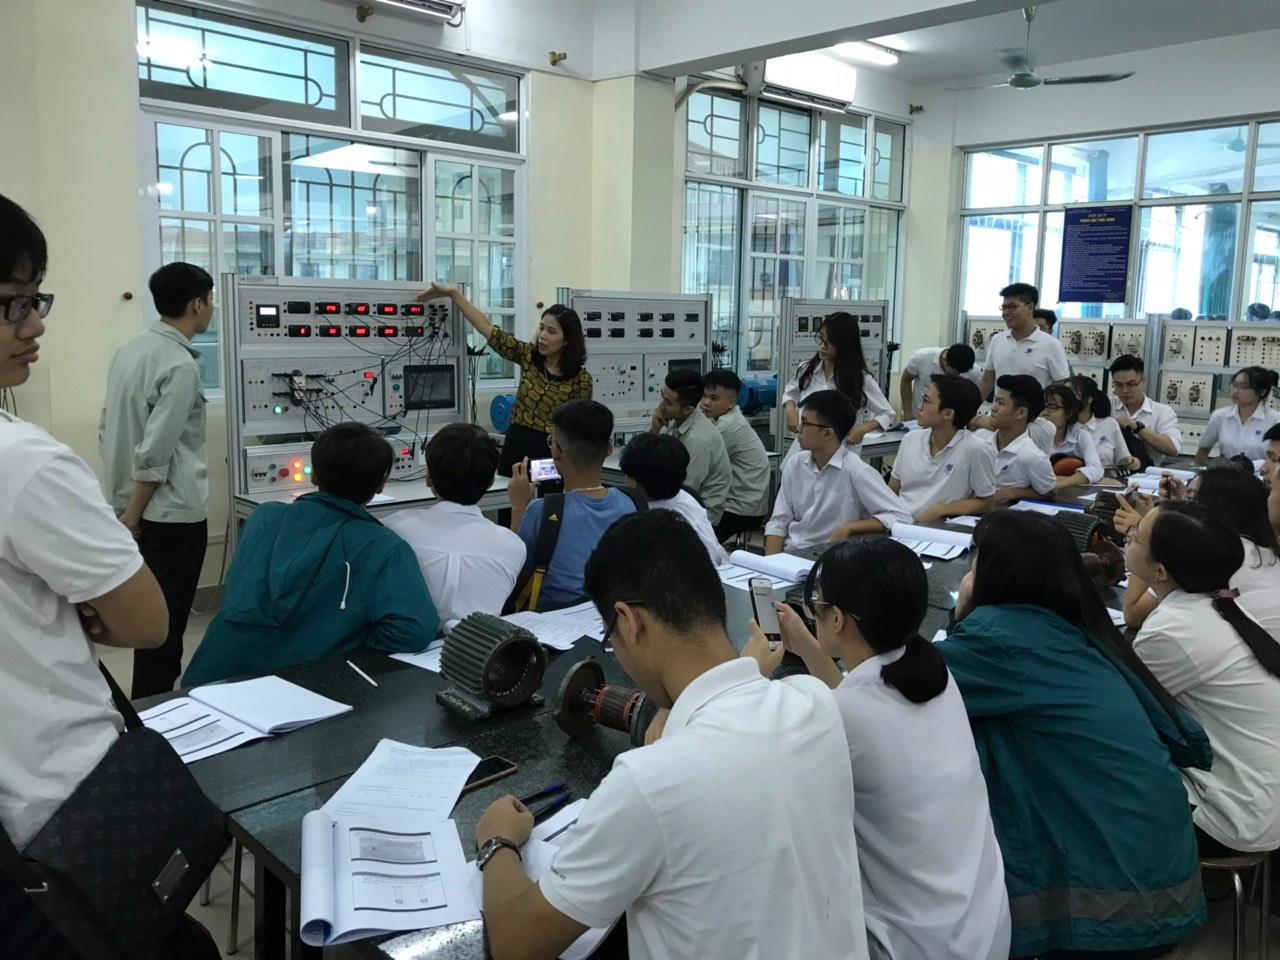 Học tập trải nghiệm của học sinh khối 12 trường THPT Nguyễn Tất Thành tại khoa Điện - Đại học Công nghiệp Hà Nội